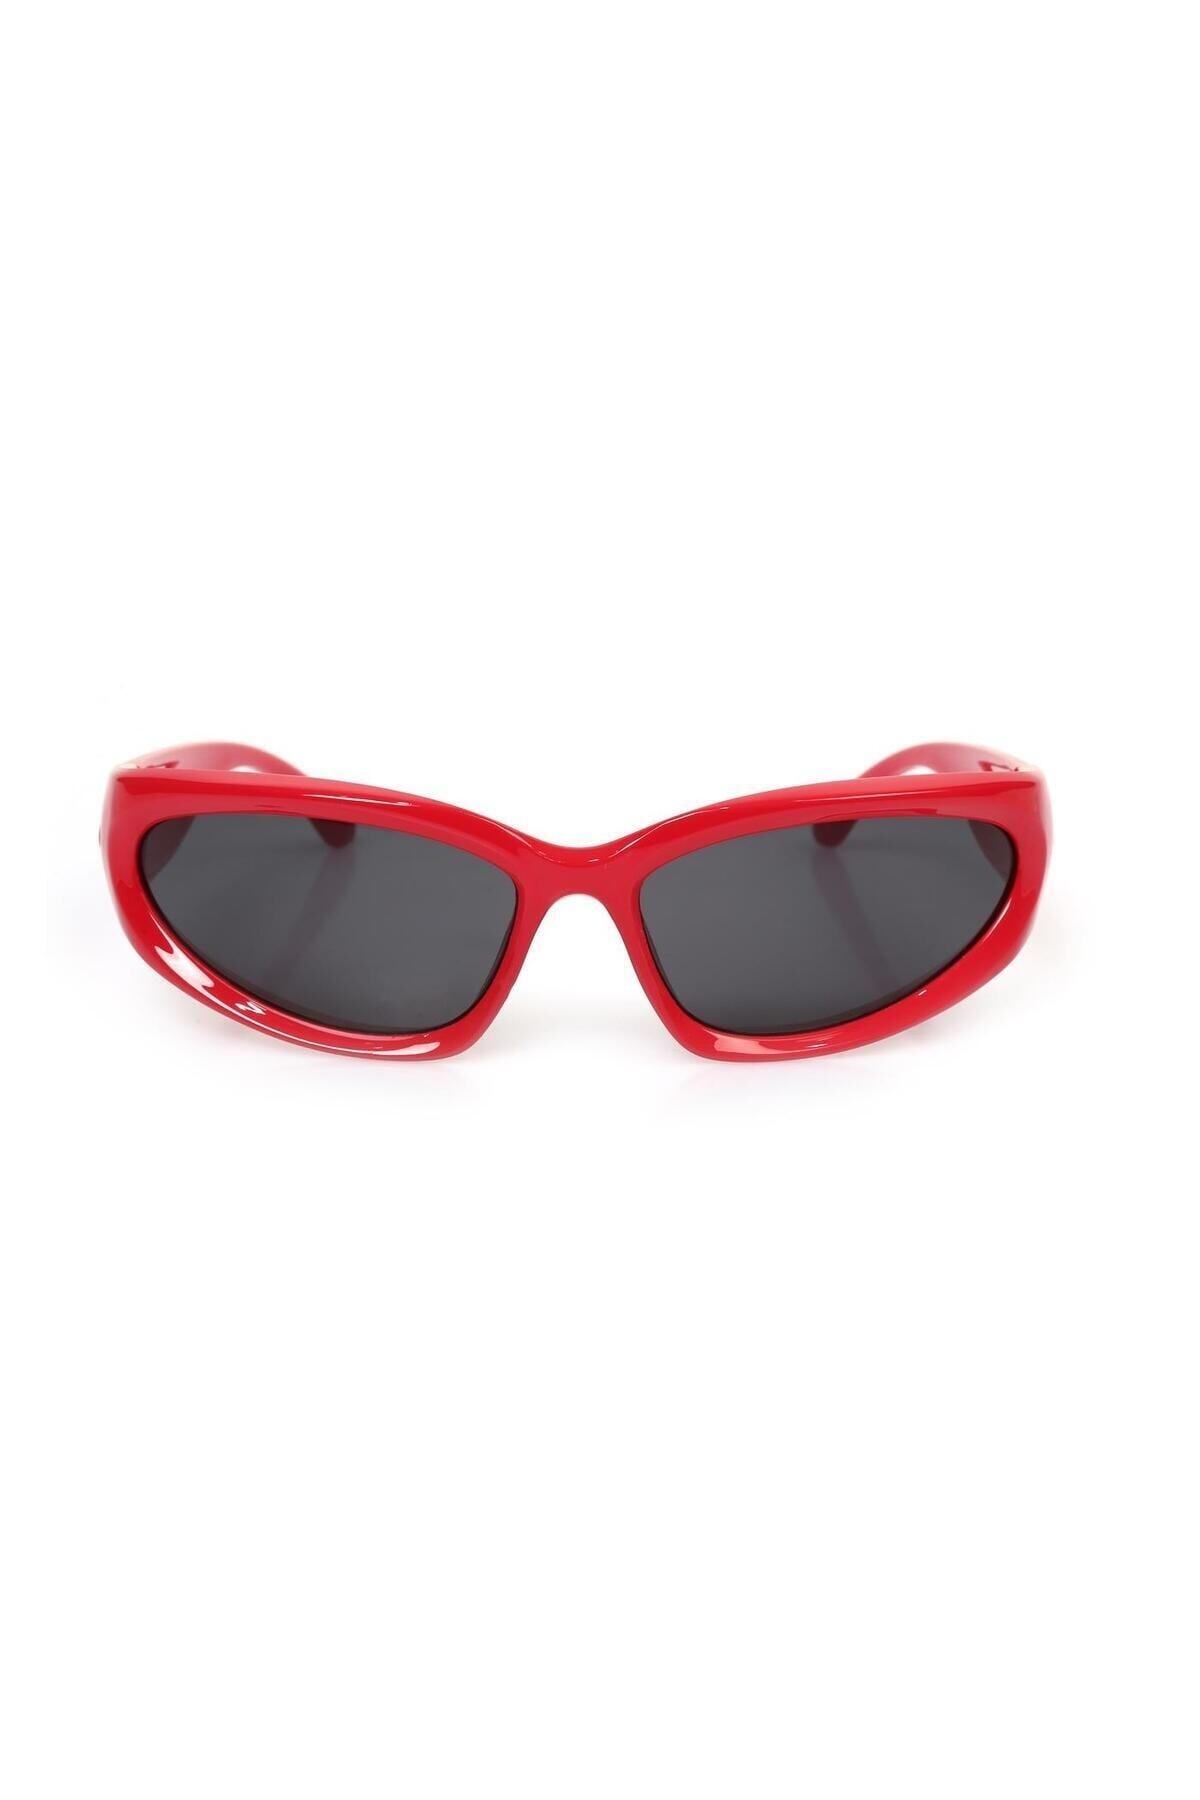 Angel Eyes UV400 Korumalı Kırmızı Çerçeve Siyah Cam Snowboard/Kayak Gözlüğü